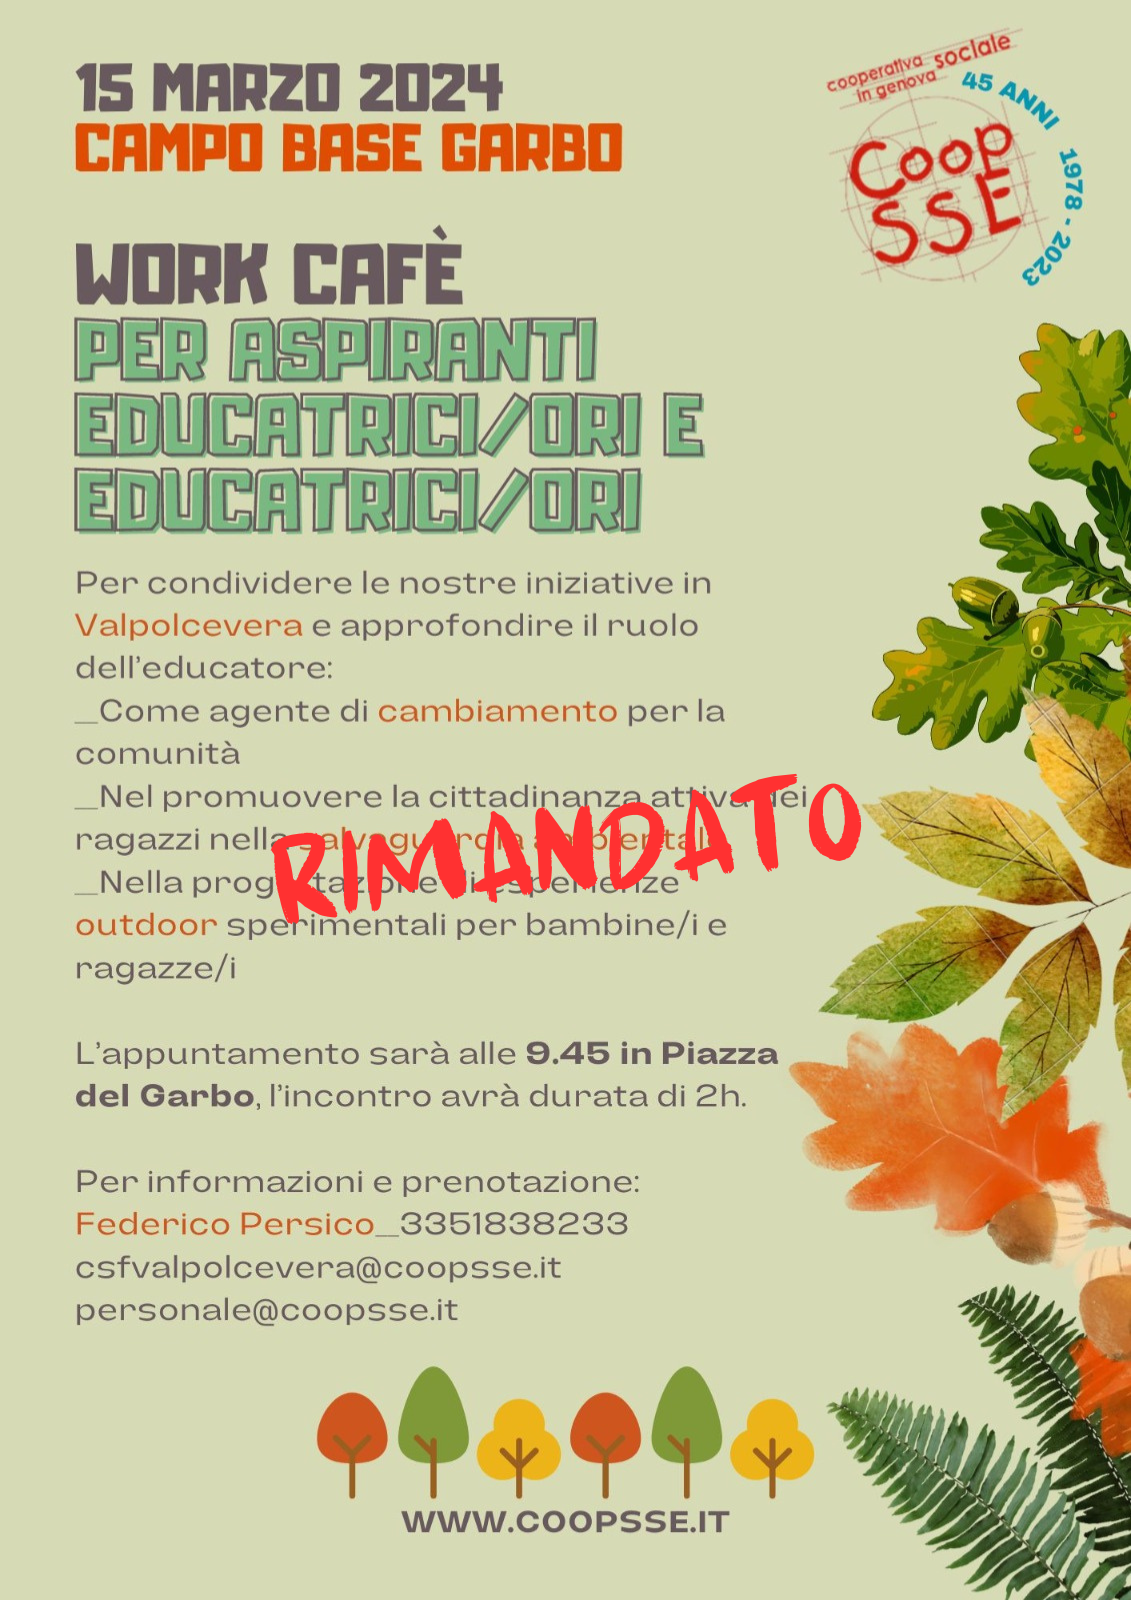 Work Cafè Per Aspiranti Educatrici/ori